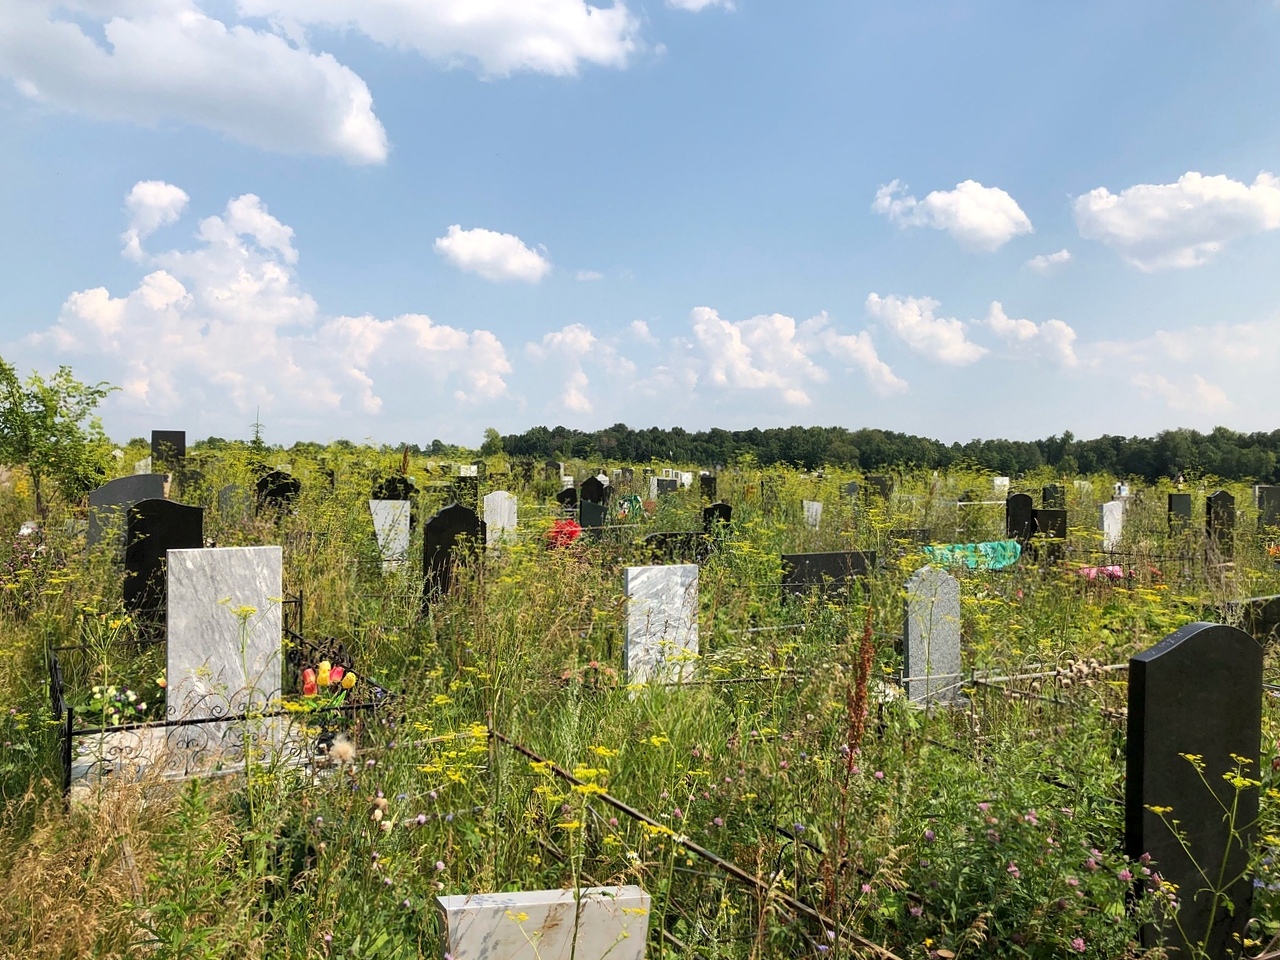  В Башкирии обнаружили «неправильные» кладбища